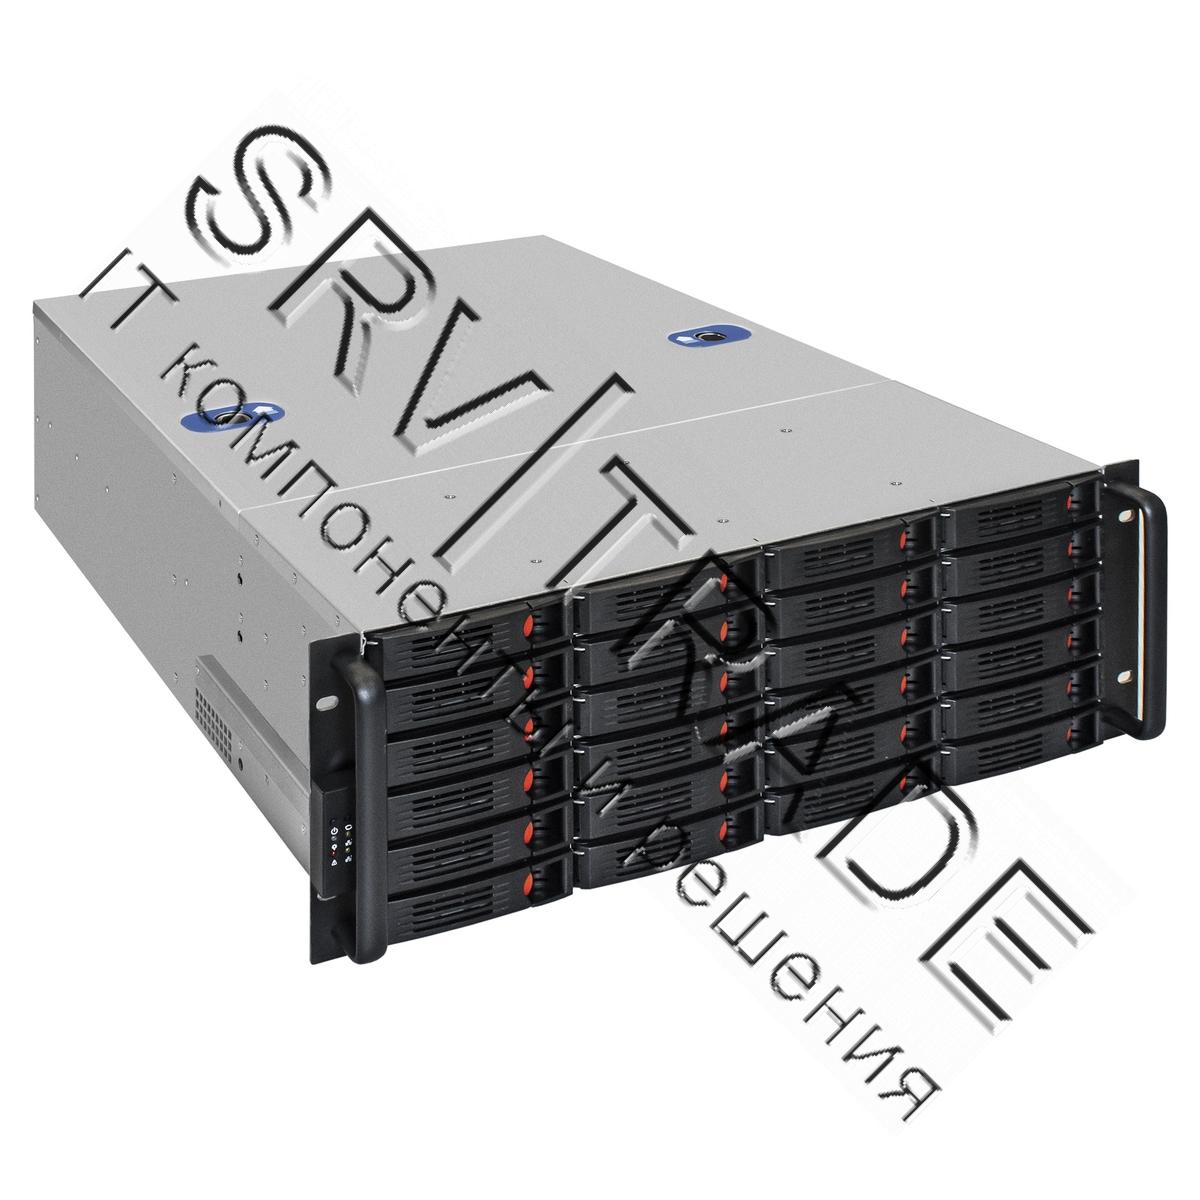 Серверный корпус ExeGate Pro 4U660-HS24 <RM 19", высота 4U, глубина 660, БП 700ADS, 24xHotSwap, USB>